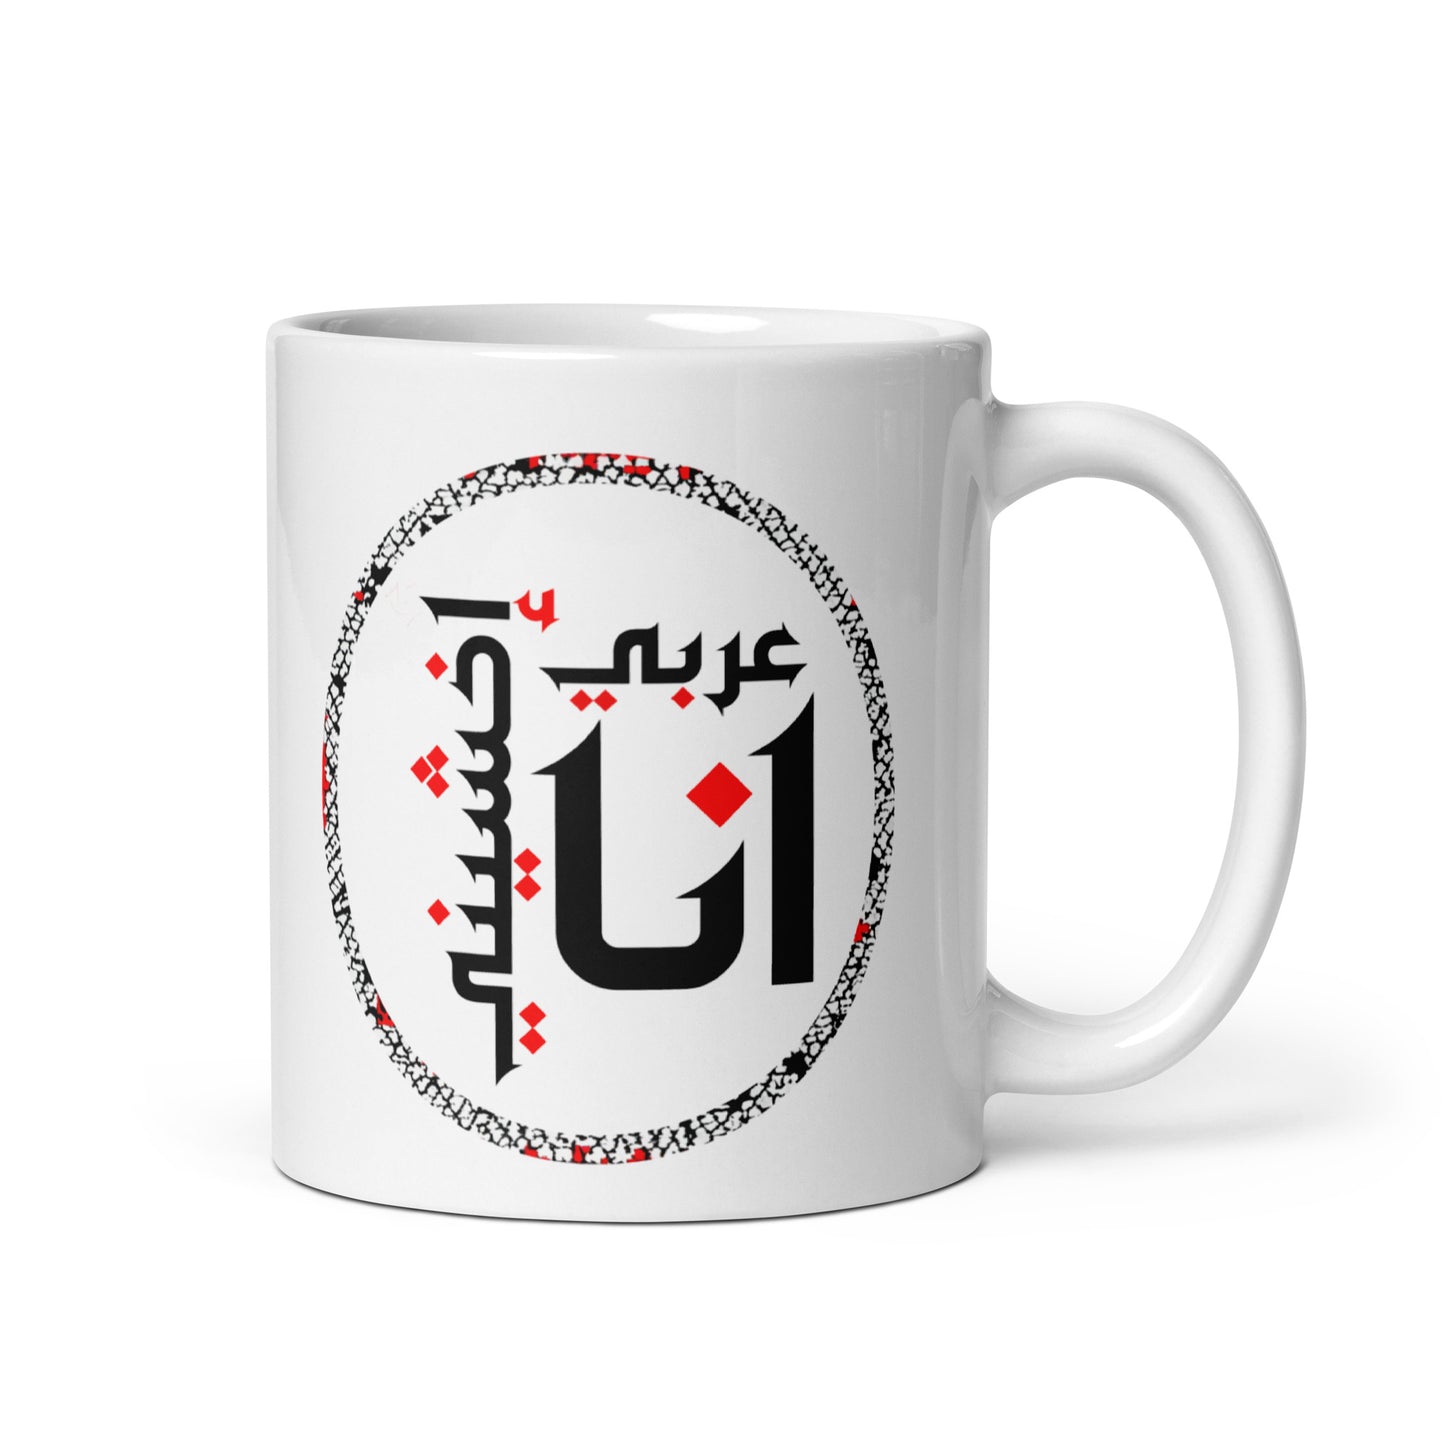 Palestinian Keffiyeh Heritage Mug